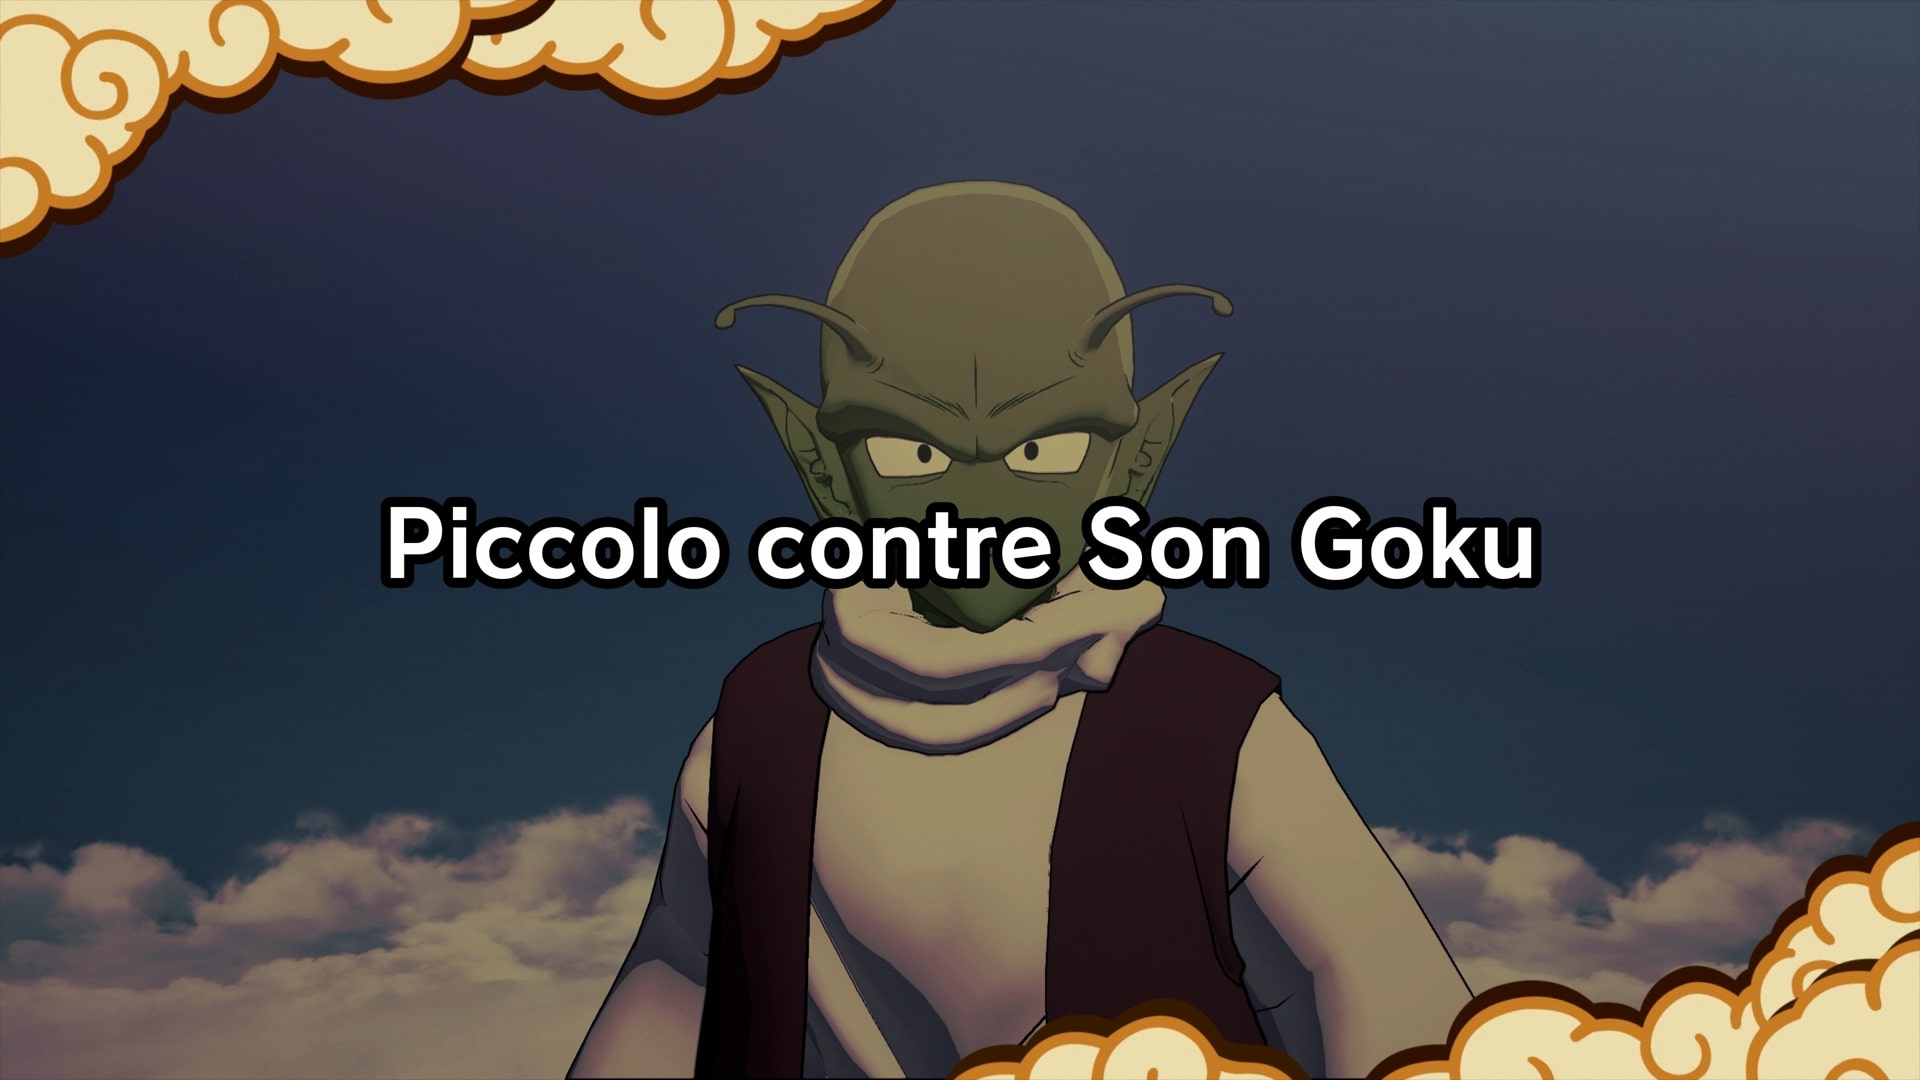 Piccolo contre son goku - dragon ball z : kakarot